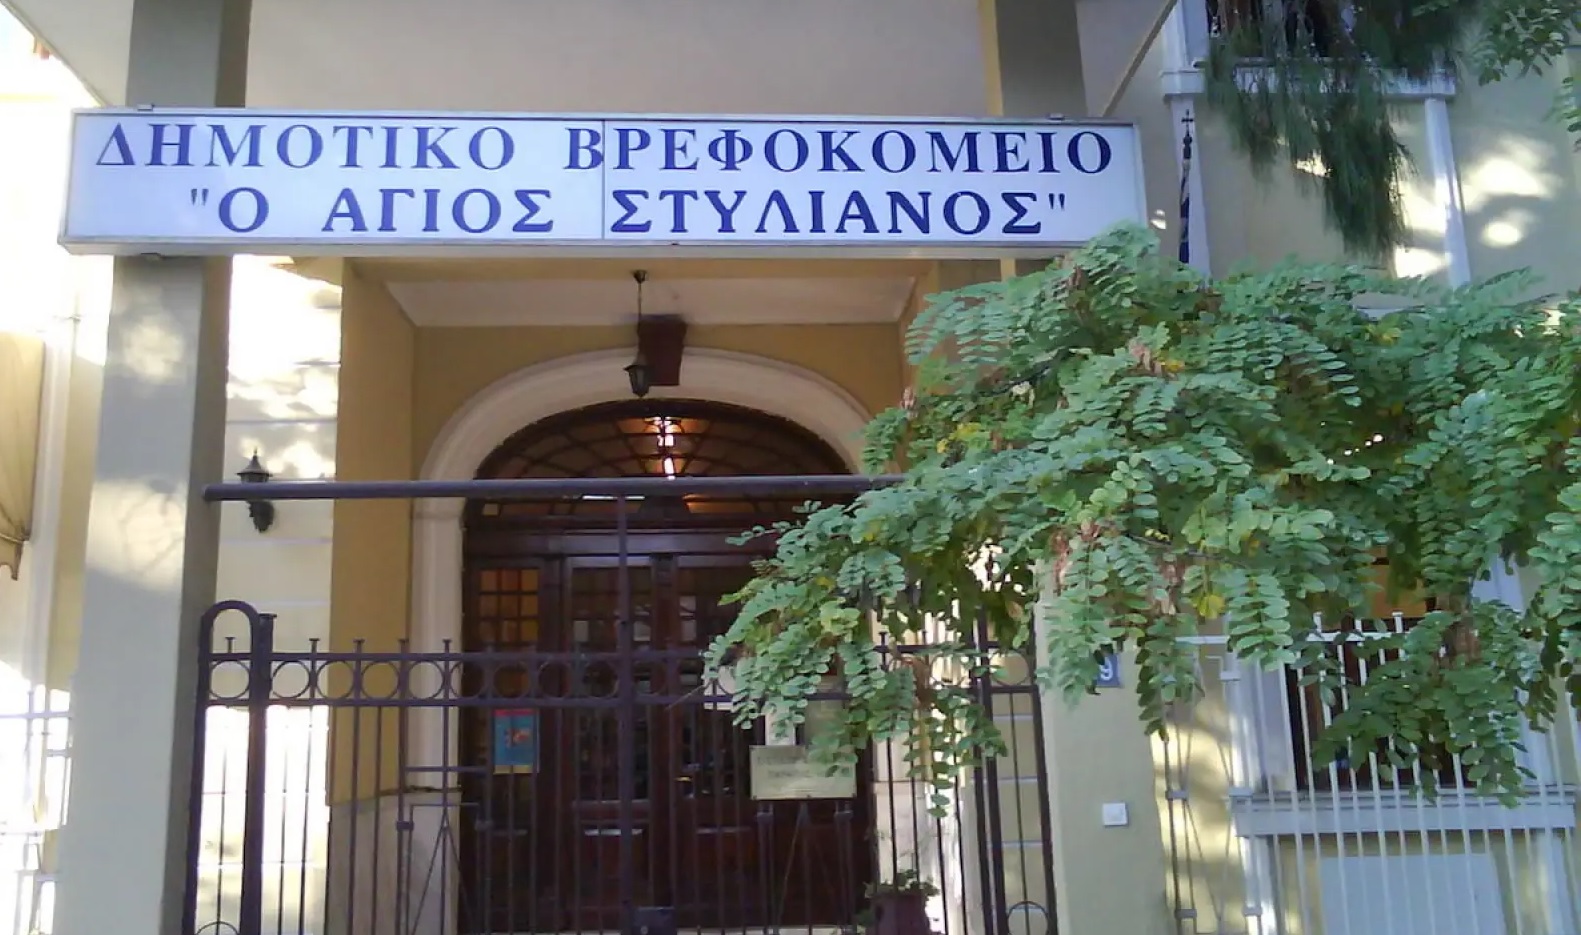 Θεσσαλονίκη: Τι έδειξε η ιατροδικαστική εξέταση για τον θάνατο του 2.5 ετών κοριτσιού